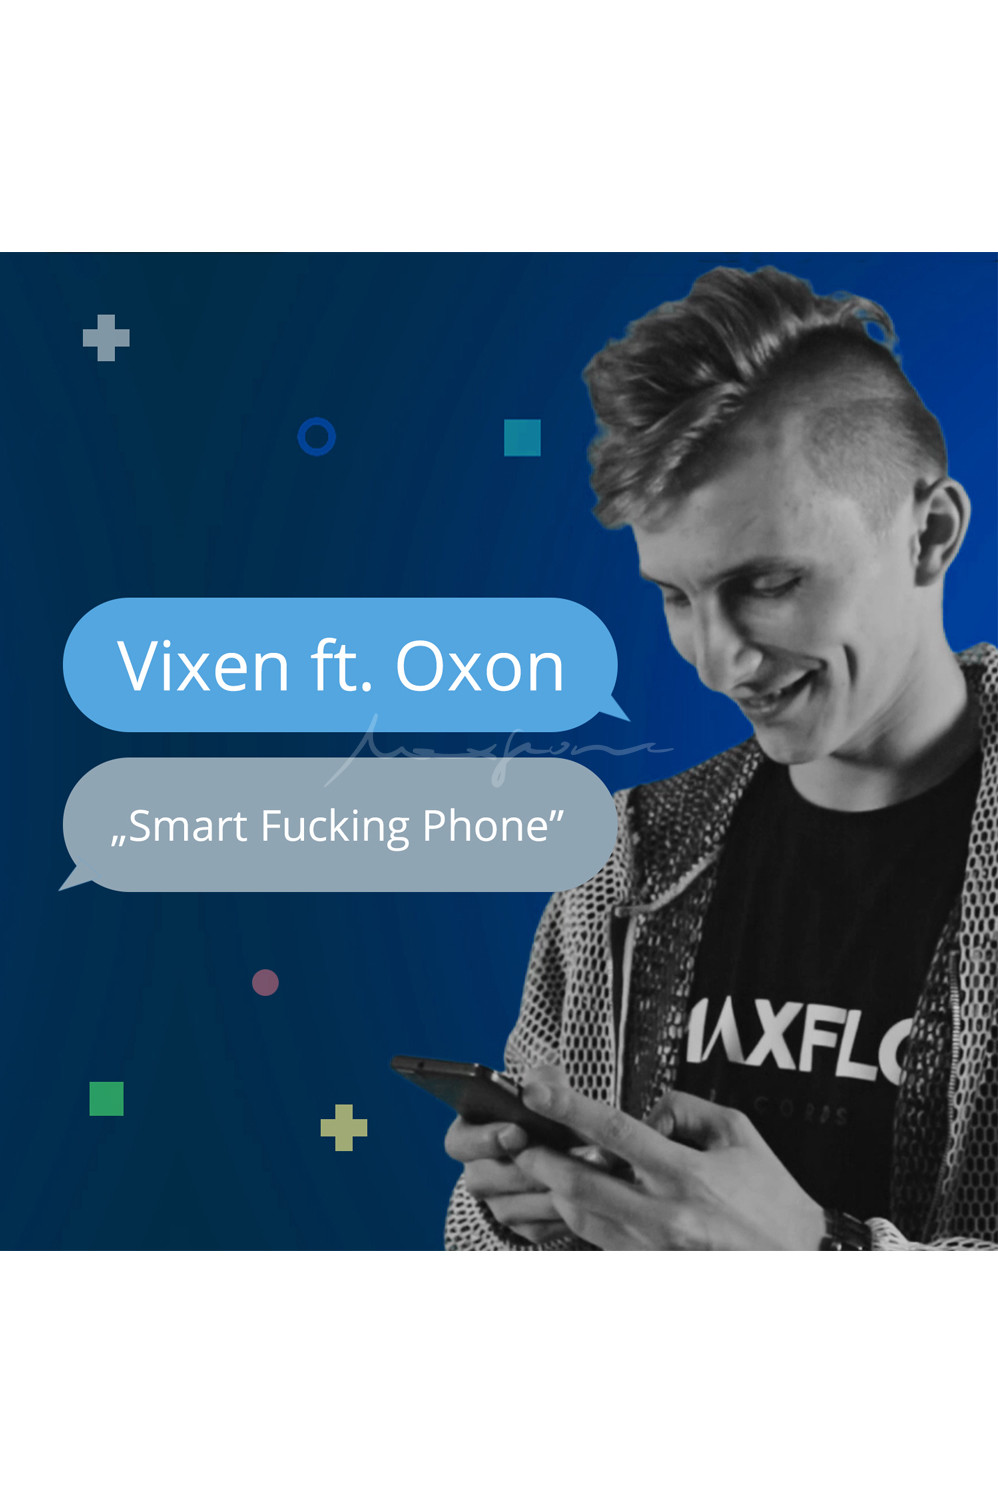 Oxon gościem Vixena. Nowy klip już w sieci